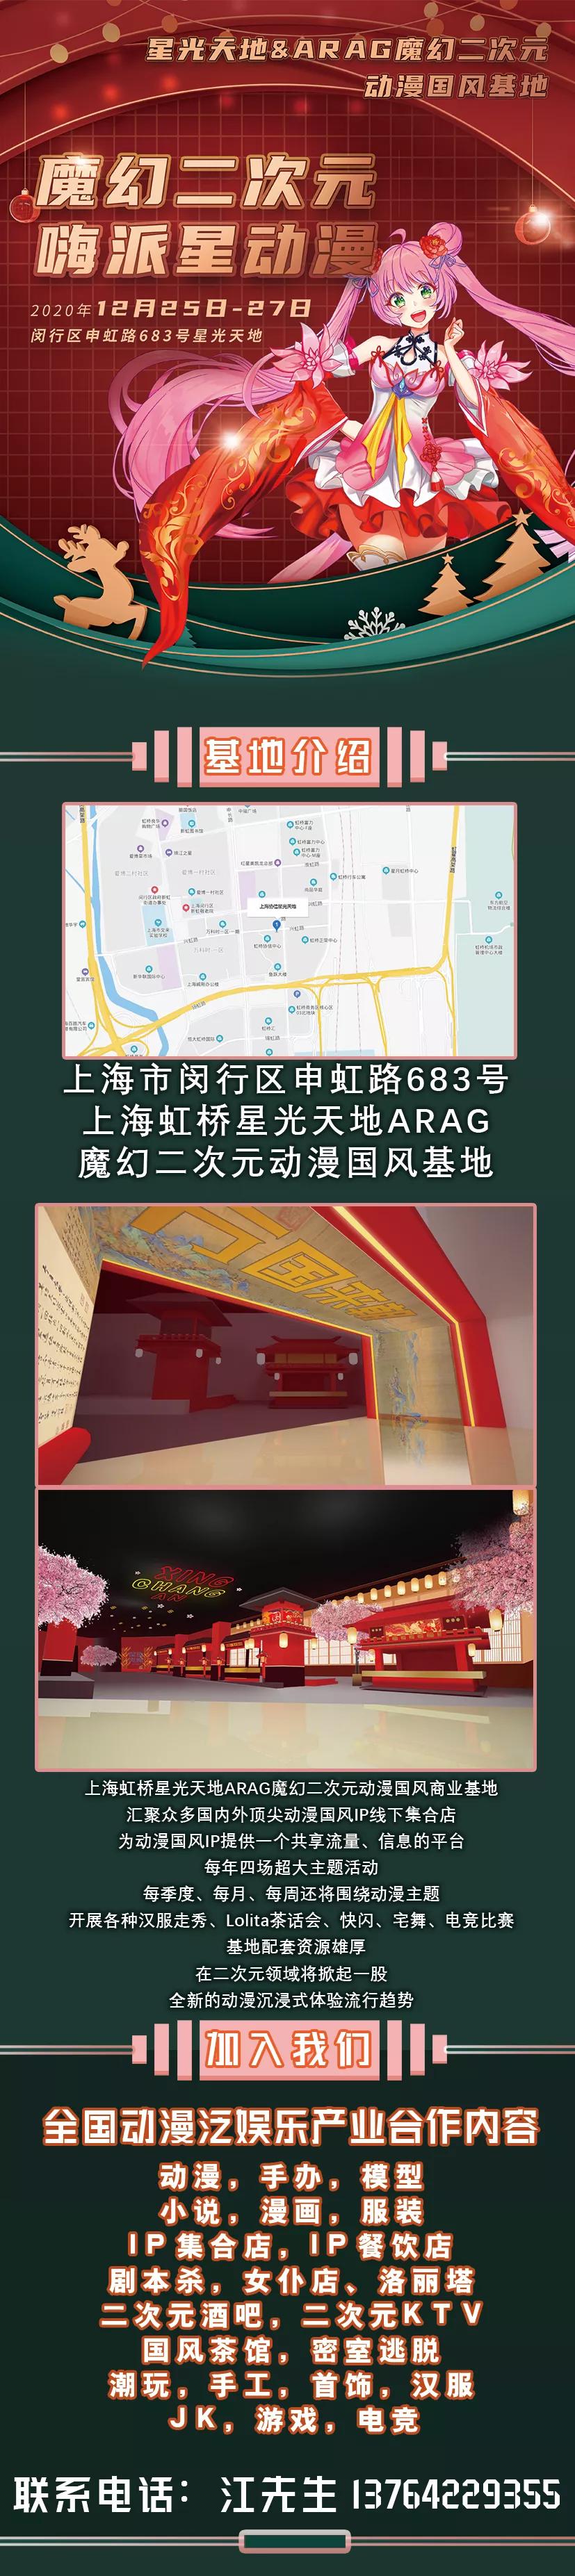 上海虹桥星光天地ARAG魔幻二次元动漫国风基地首次活动来袭